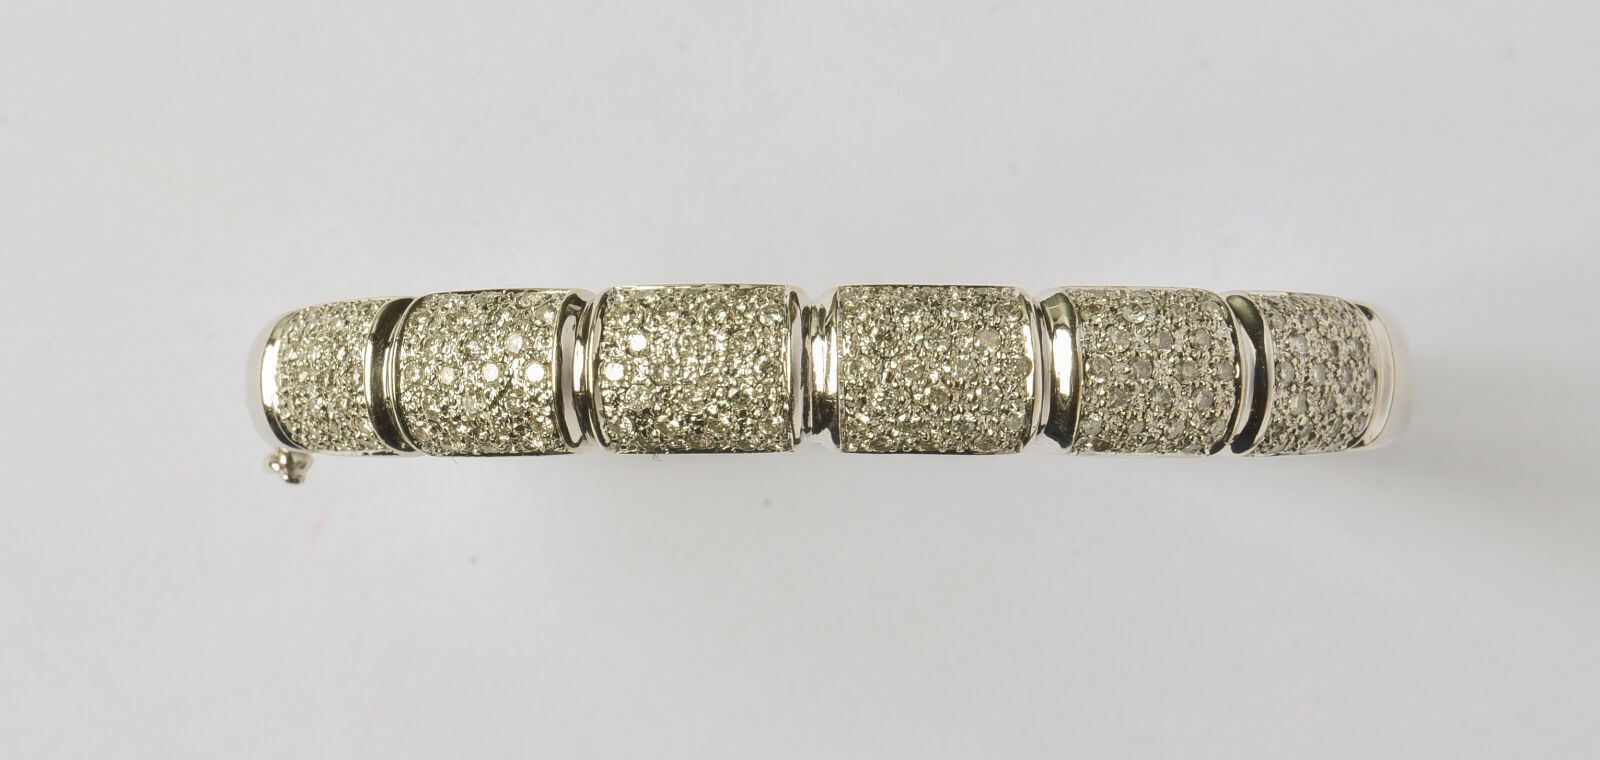 Null 刚性镂空18K(750/oo)白金手镯，上半部分镶嵌了6颗铺镶的明亮型切割钻石（小冲击），共重约3克拉。毛重：28克。